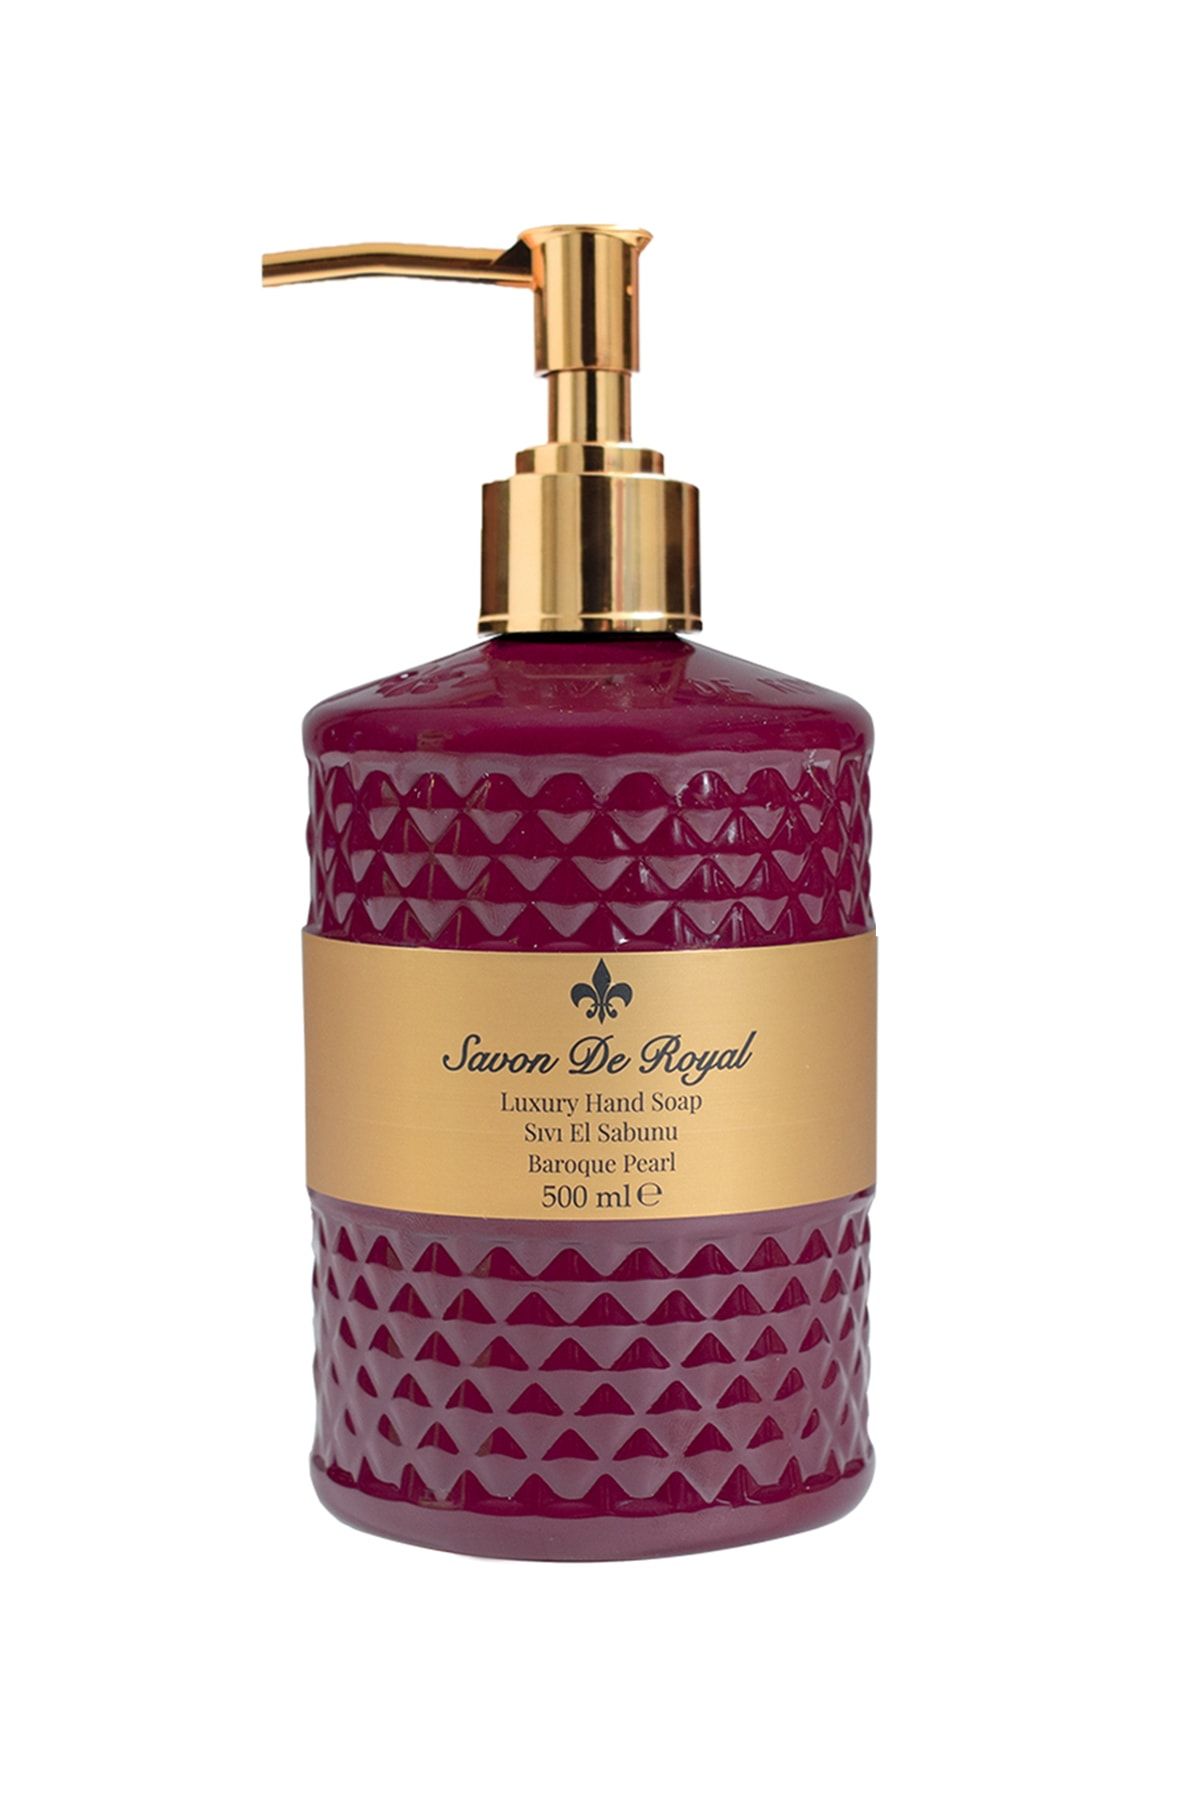 Savon de Royal Luxury Vegan Sıvı Sabun Baroque Pearl 500 Ml, Meyvemsi, Yasemin, Vanilya, Sandal